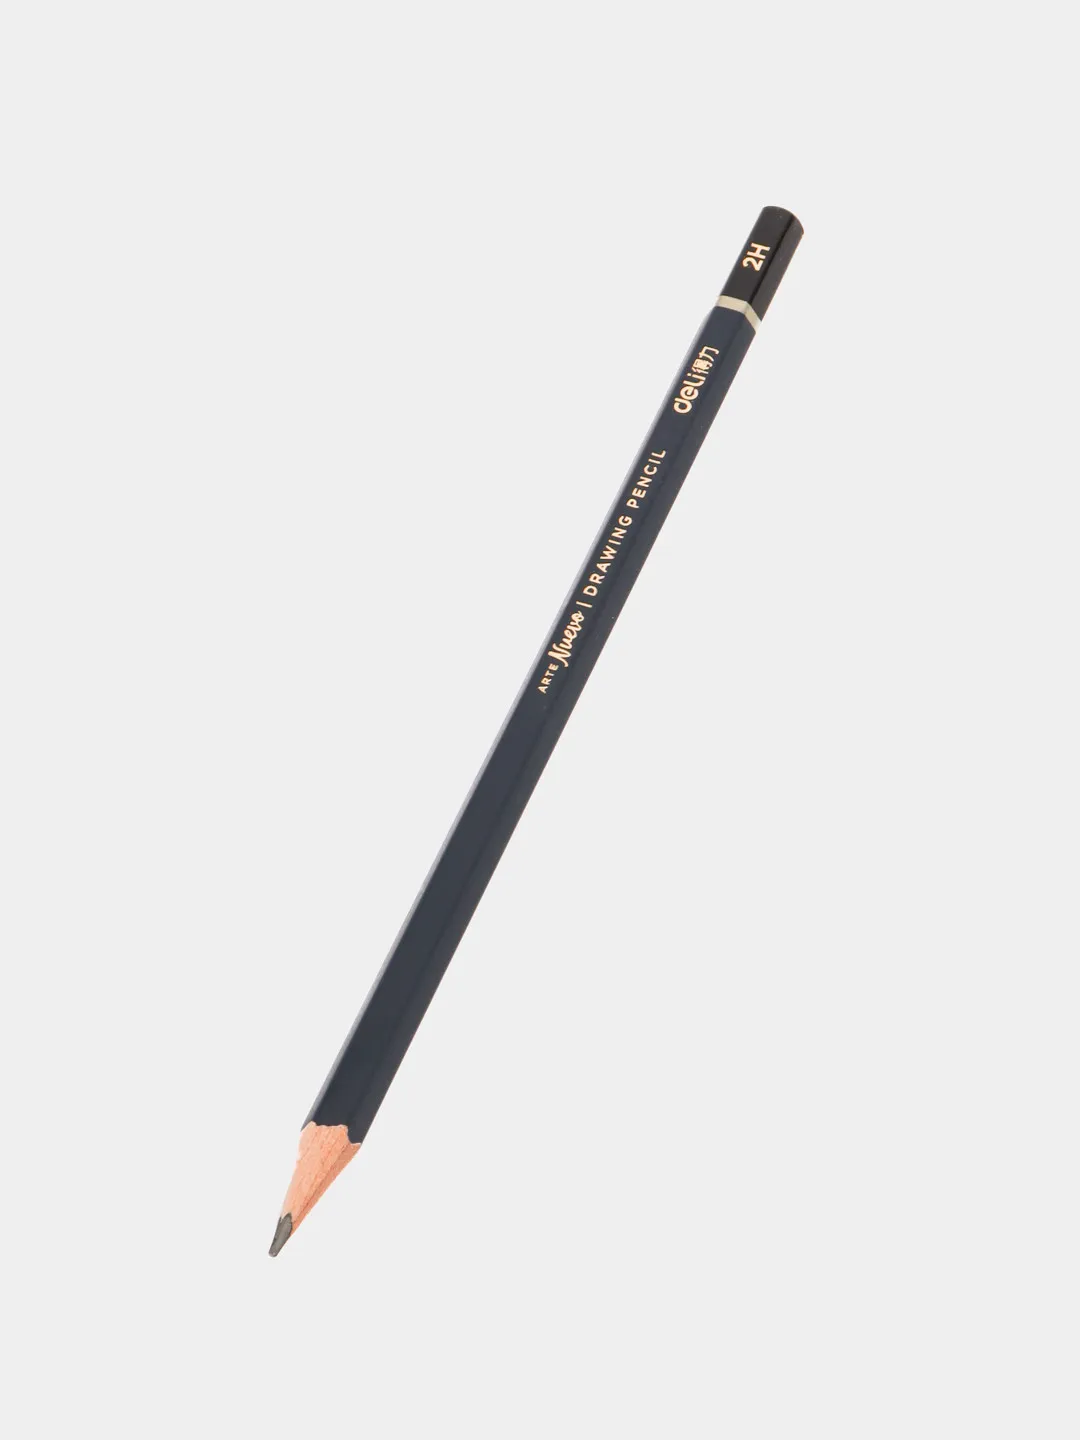 Pencil Nuevo 2H S999 Deli#1